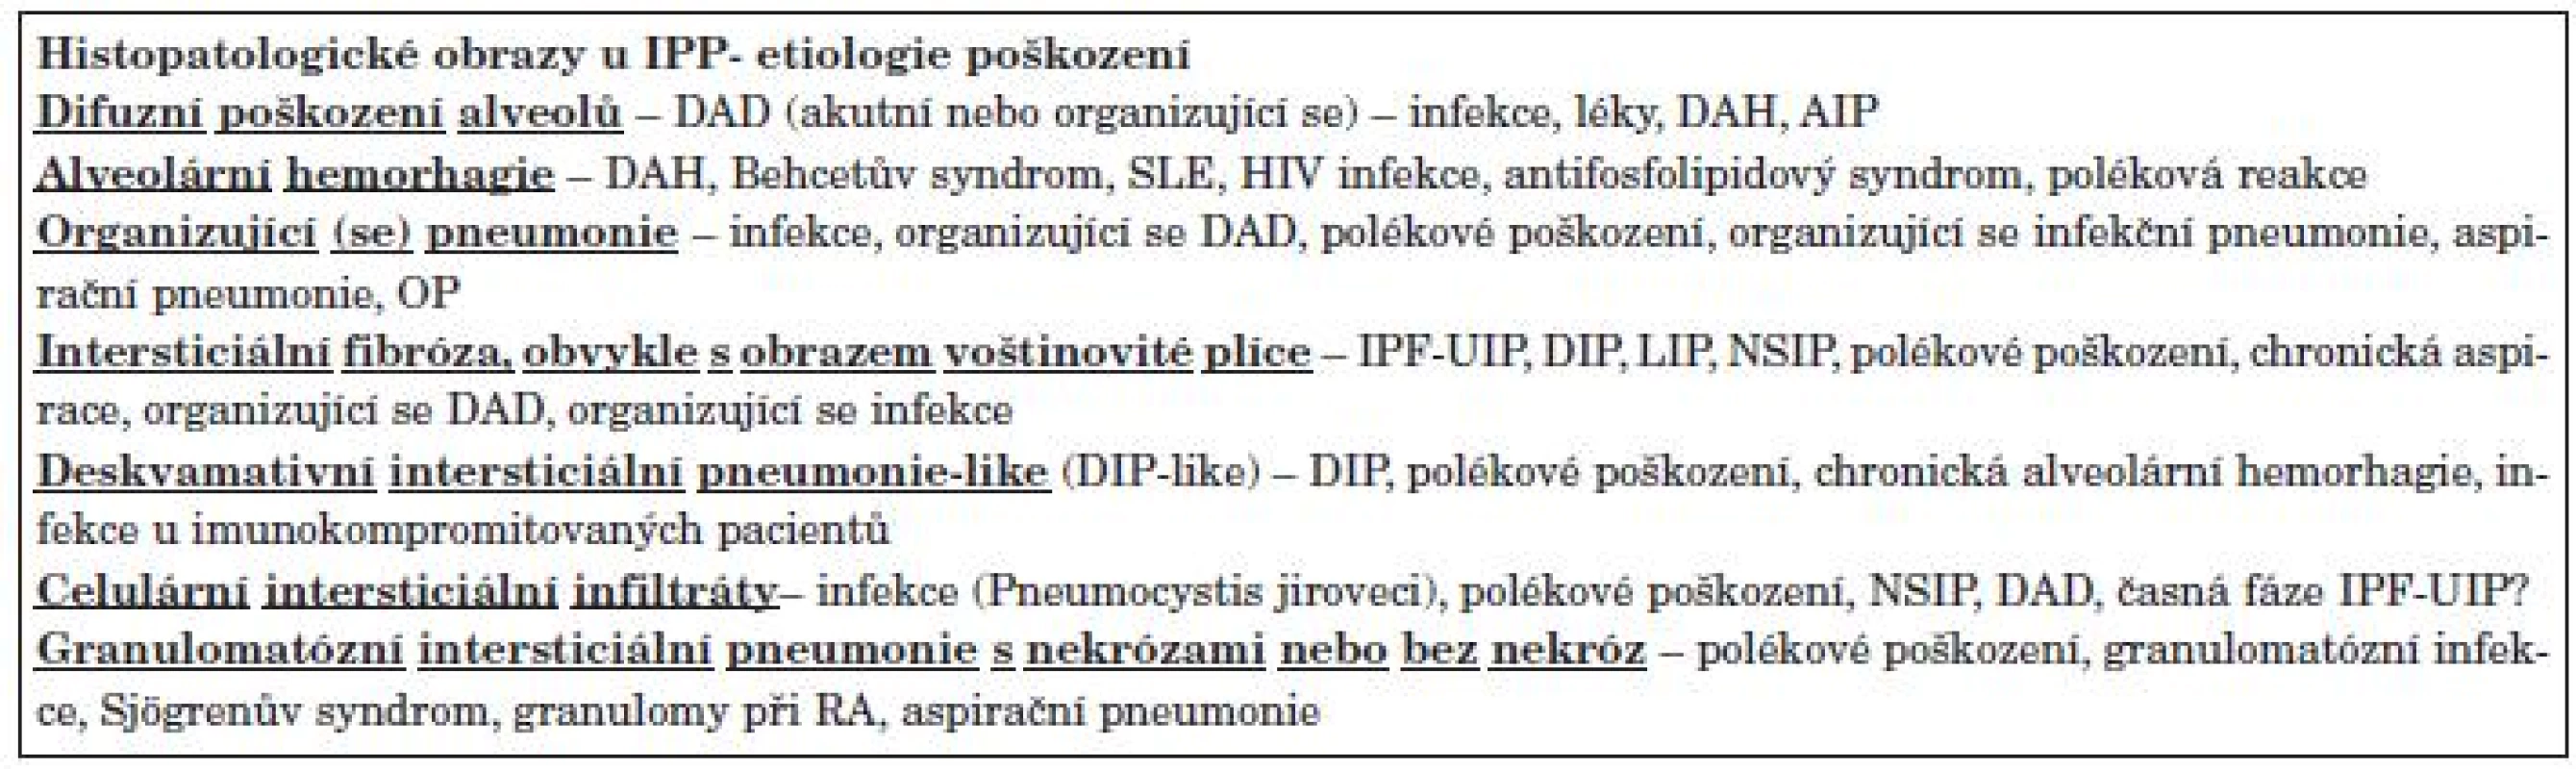 Histopatologické obrazy reakce na poškození u IPP u SOP.